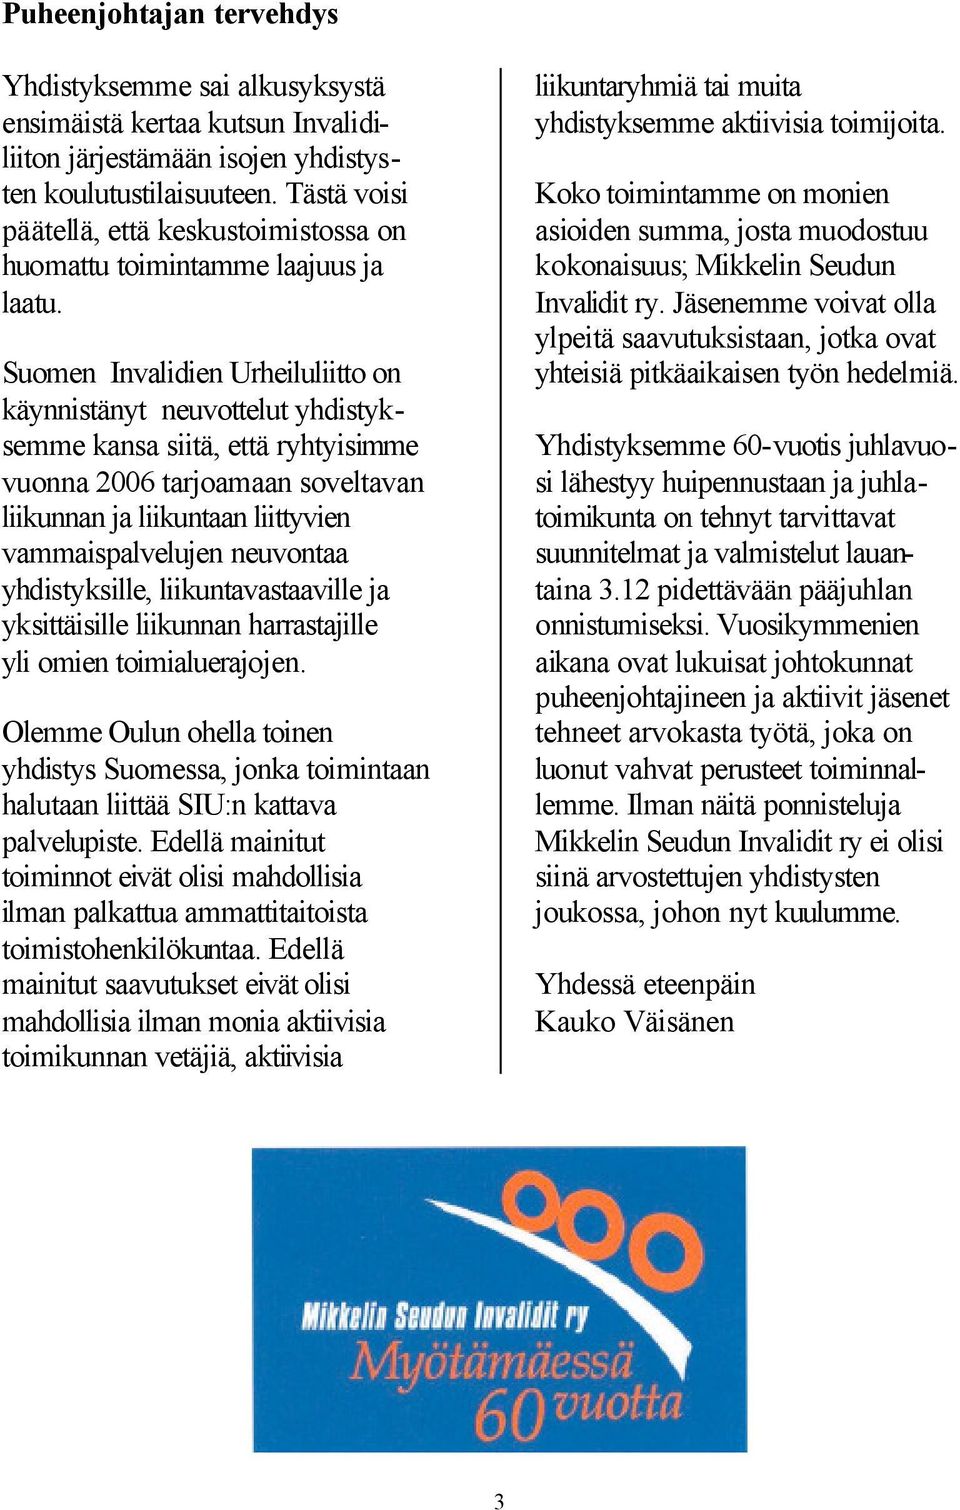 Suomen Invalidien Urheiluliitto on käynnistänyt neuvottelut yhdistyksemme kansa siitä, että ryhtyisimme vuonna 2006 tarjoamaan soveltavan liikunnan ja liikuntaan liittyvien vammaispalvelujen